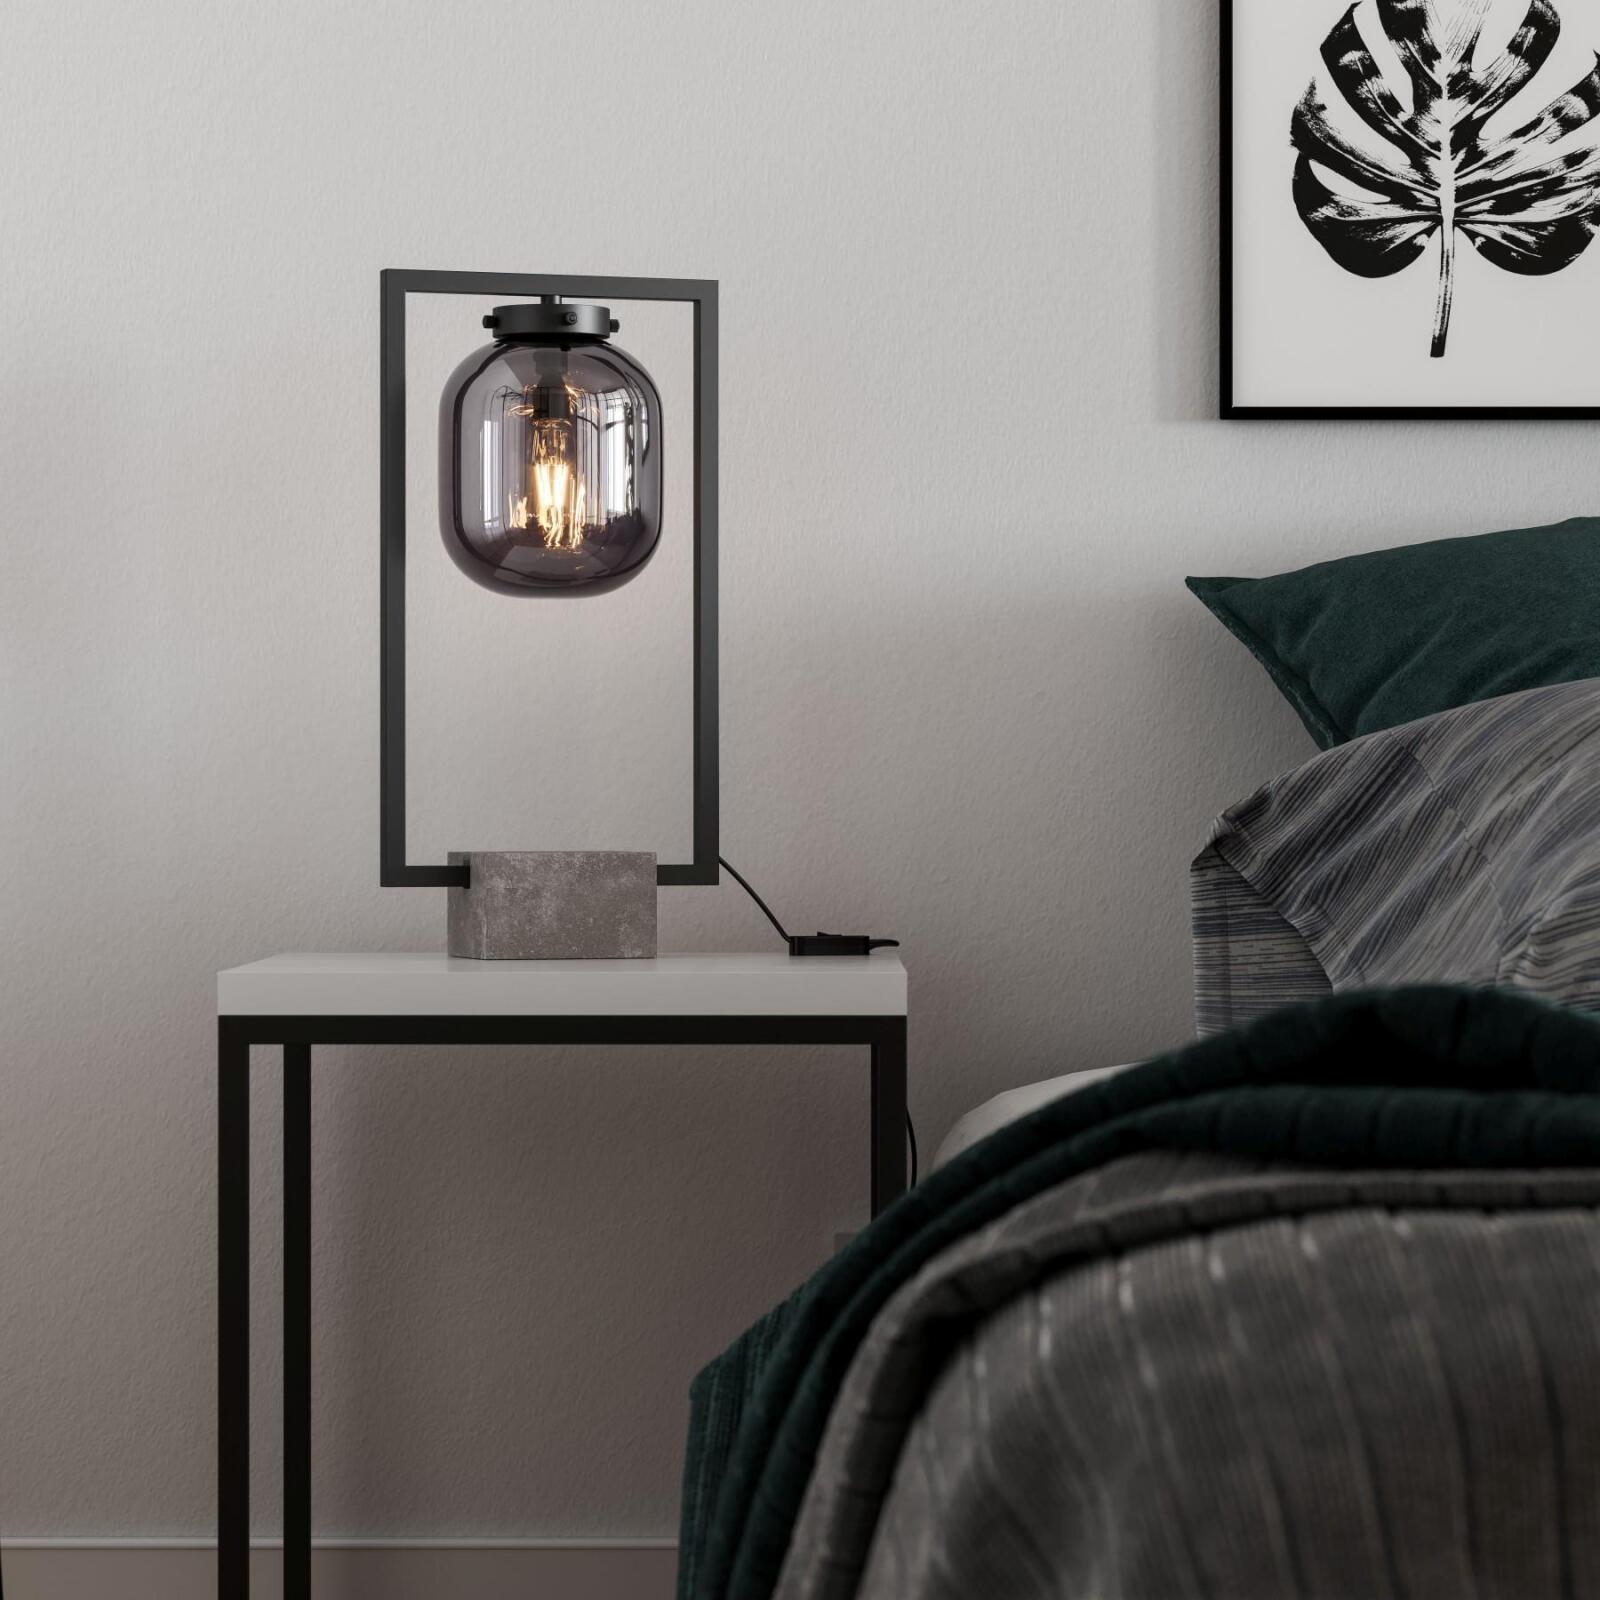 By Rydens & Dixton Glasschirm rauchgrau Leuchten schwarz Höhe - 52cm Onlineshop Tischleuchte Lampen Metall